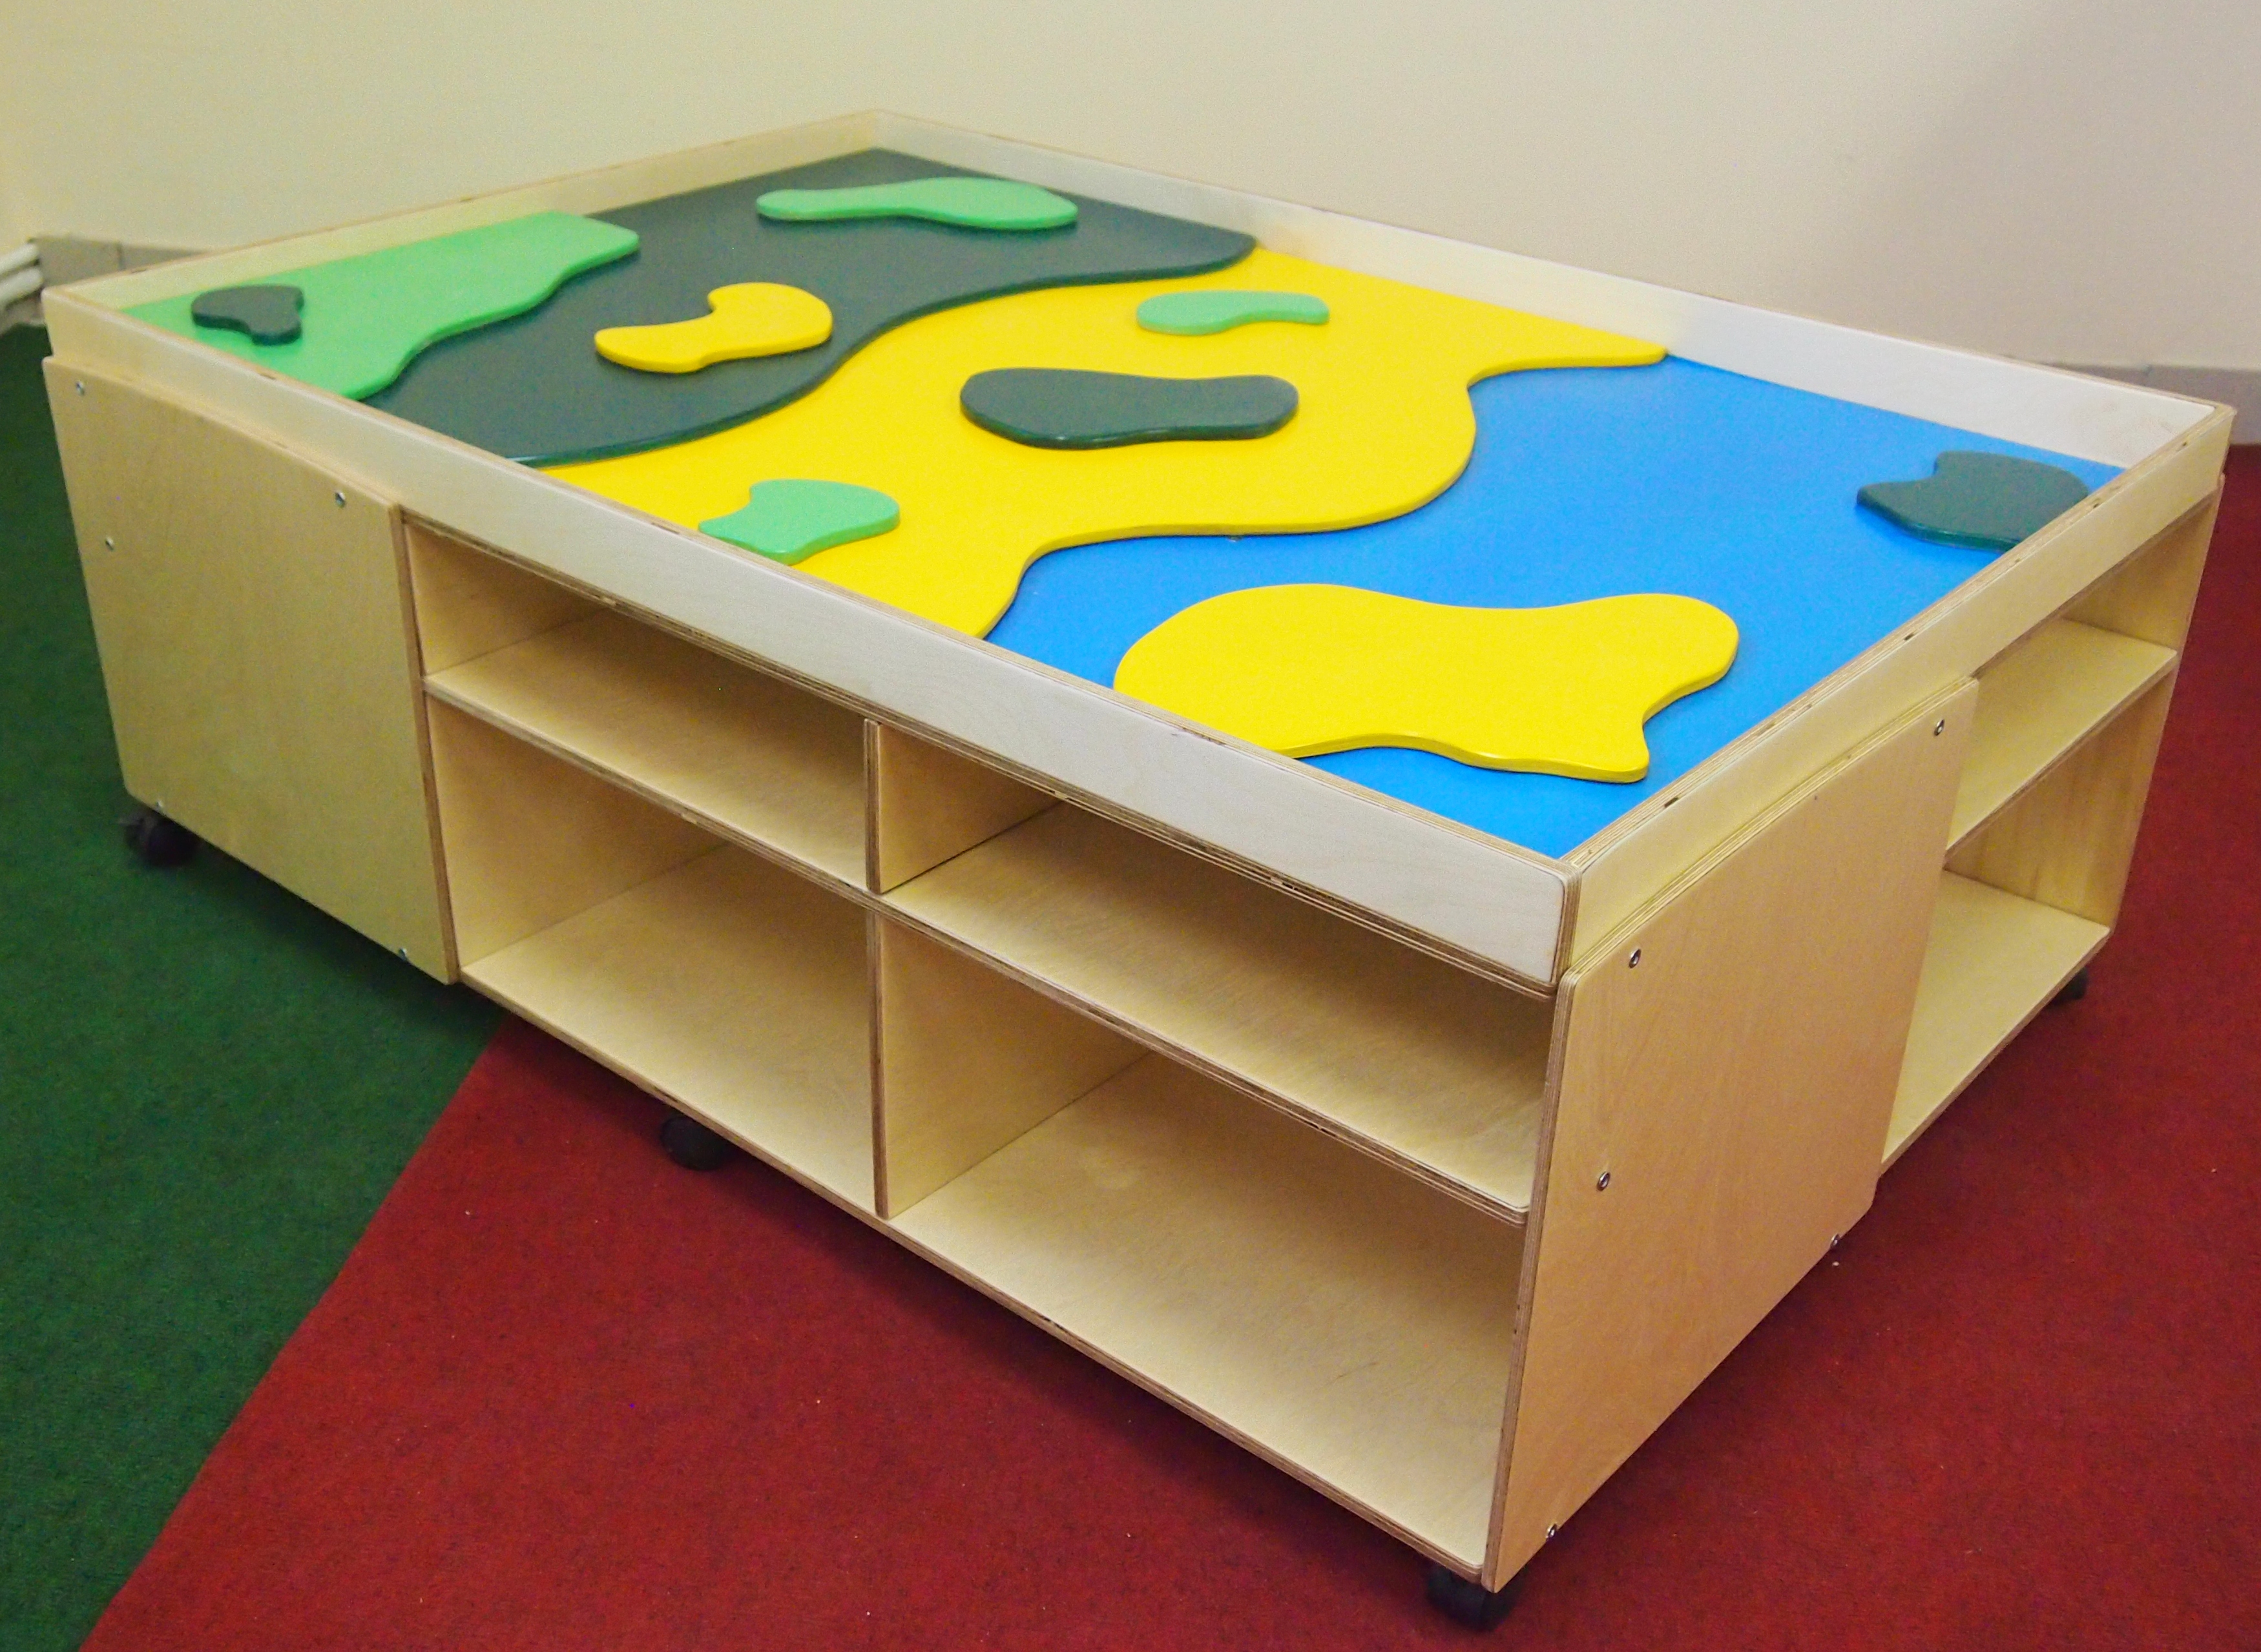 трансформированная мебель для детского сада